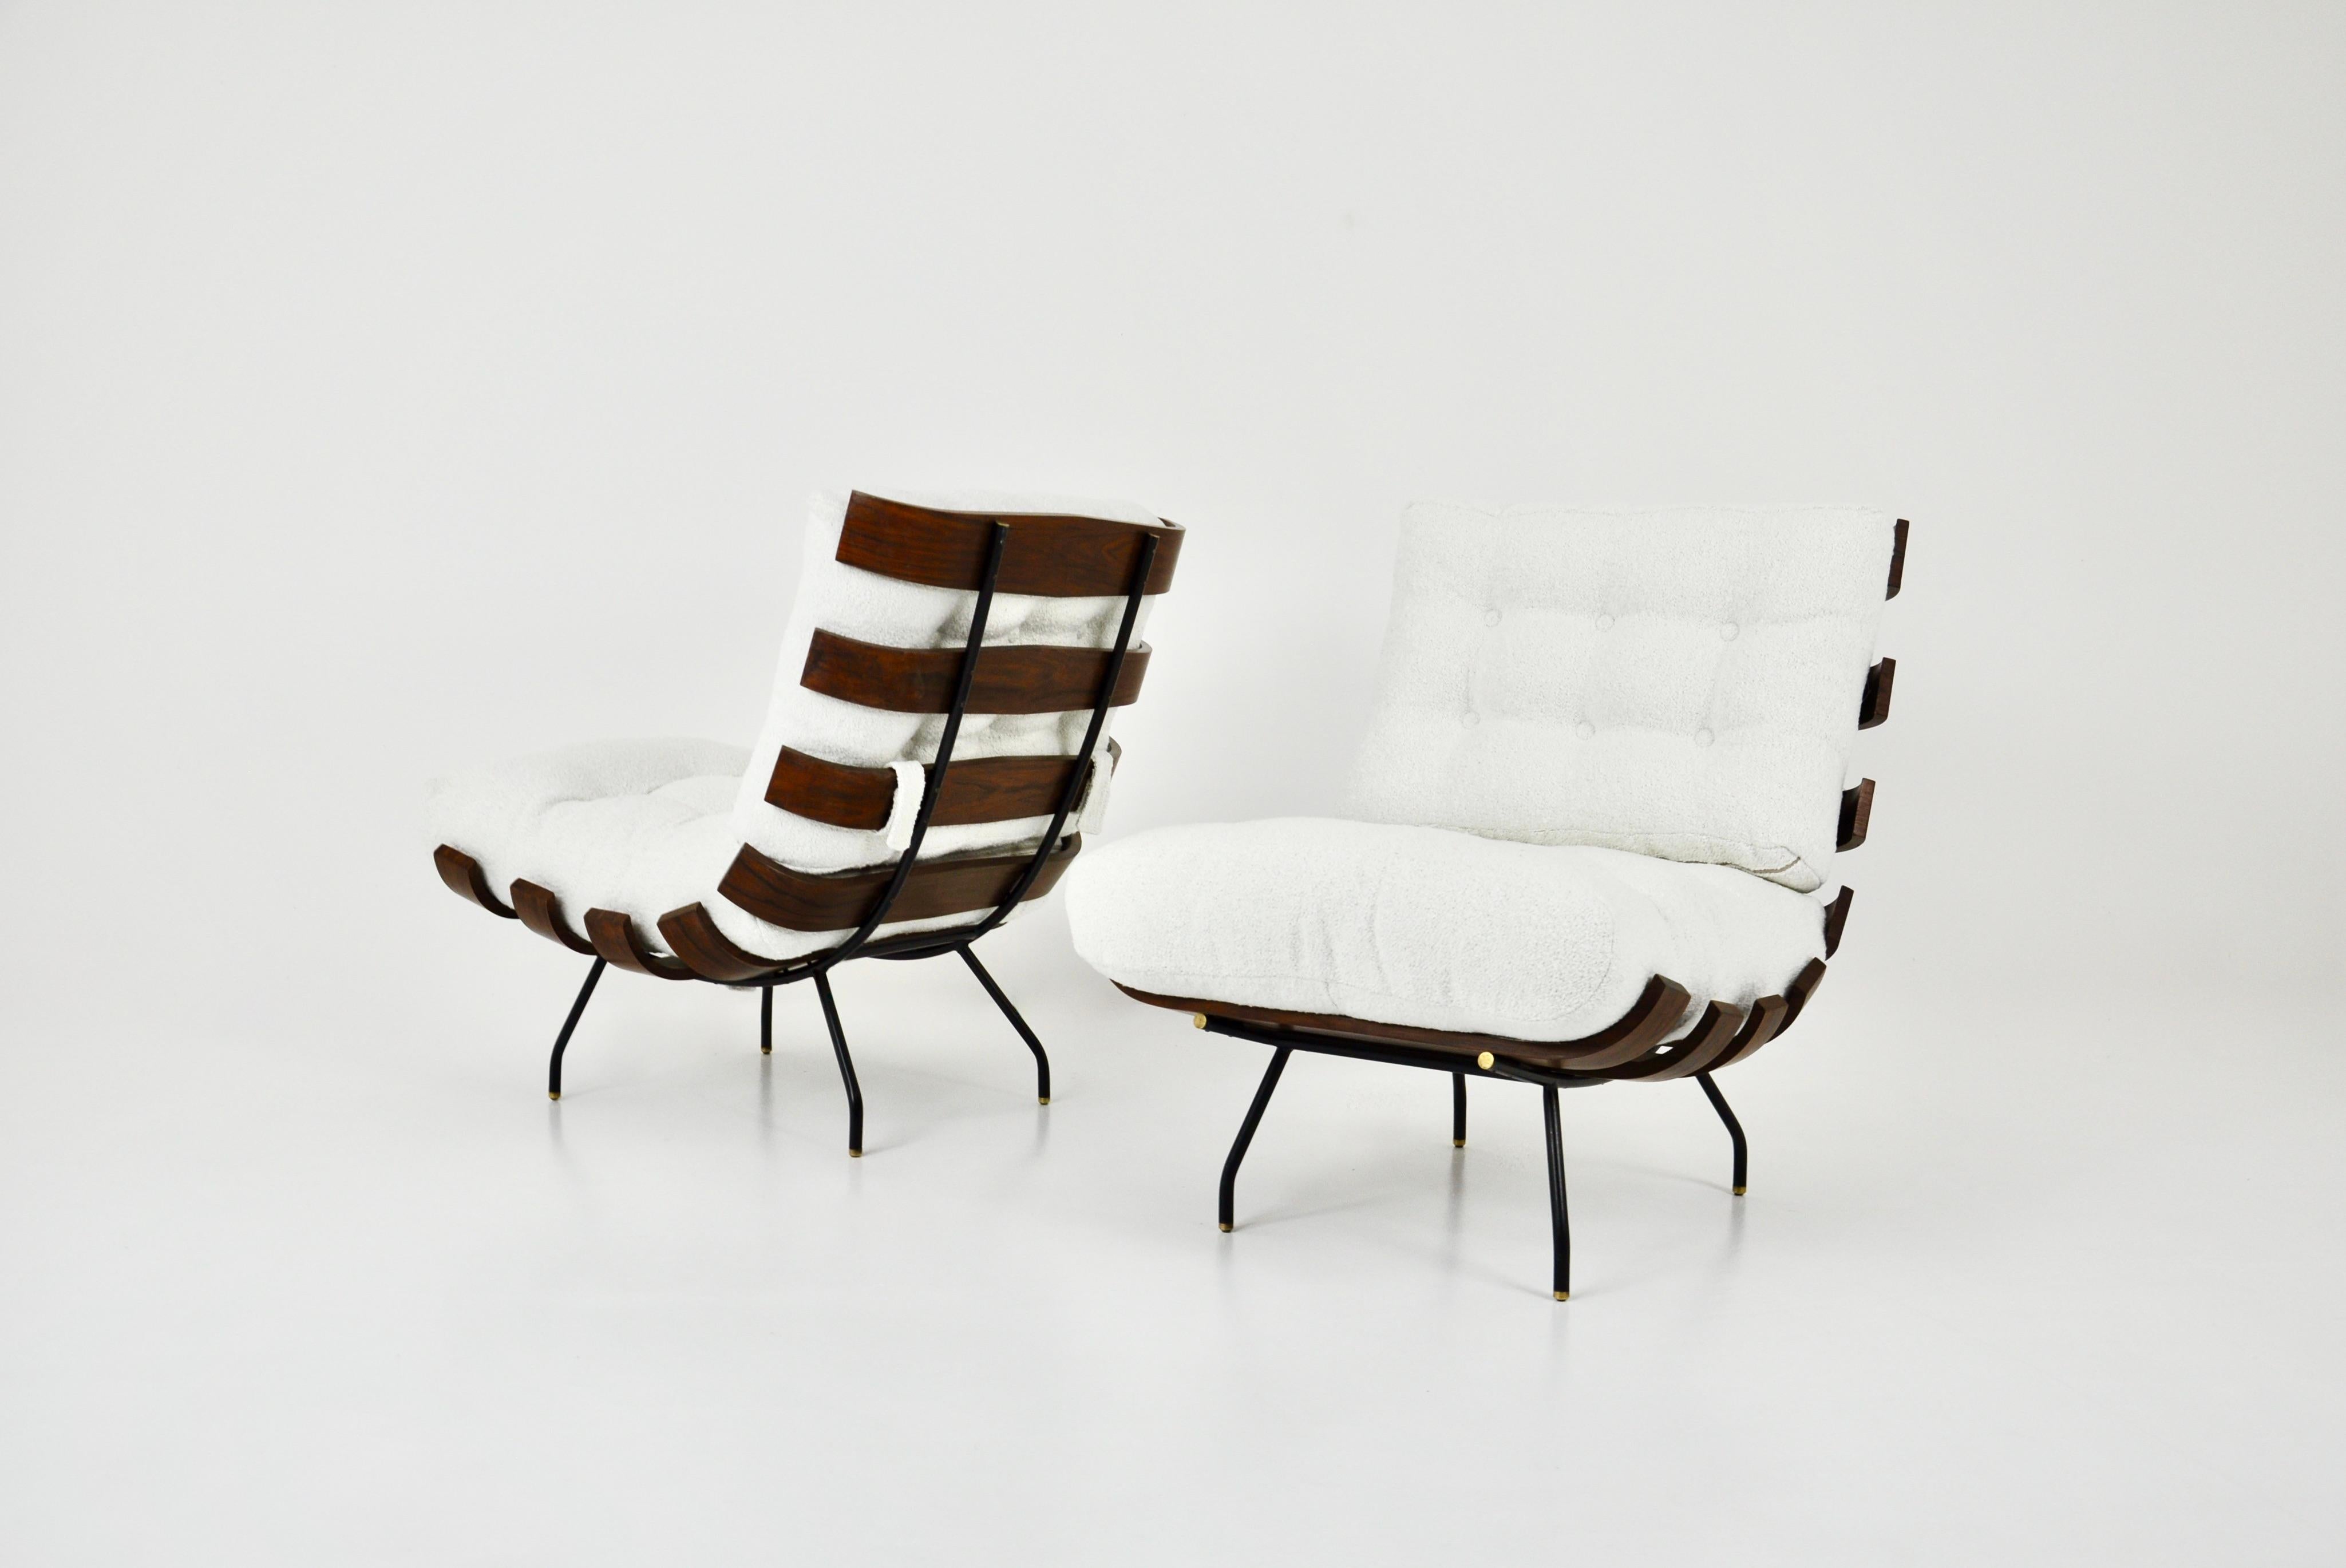 2 chaises longues Costela en bois, pieds en métal et coussins en tissu bouclé de Martin Eisler et Carlo Hauner. Hauteur d'assise : 48 cm. Usure due au temps et à l'âge des chaises longues. 